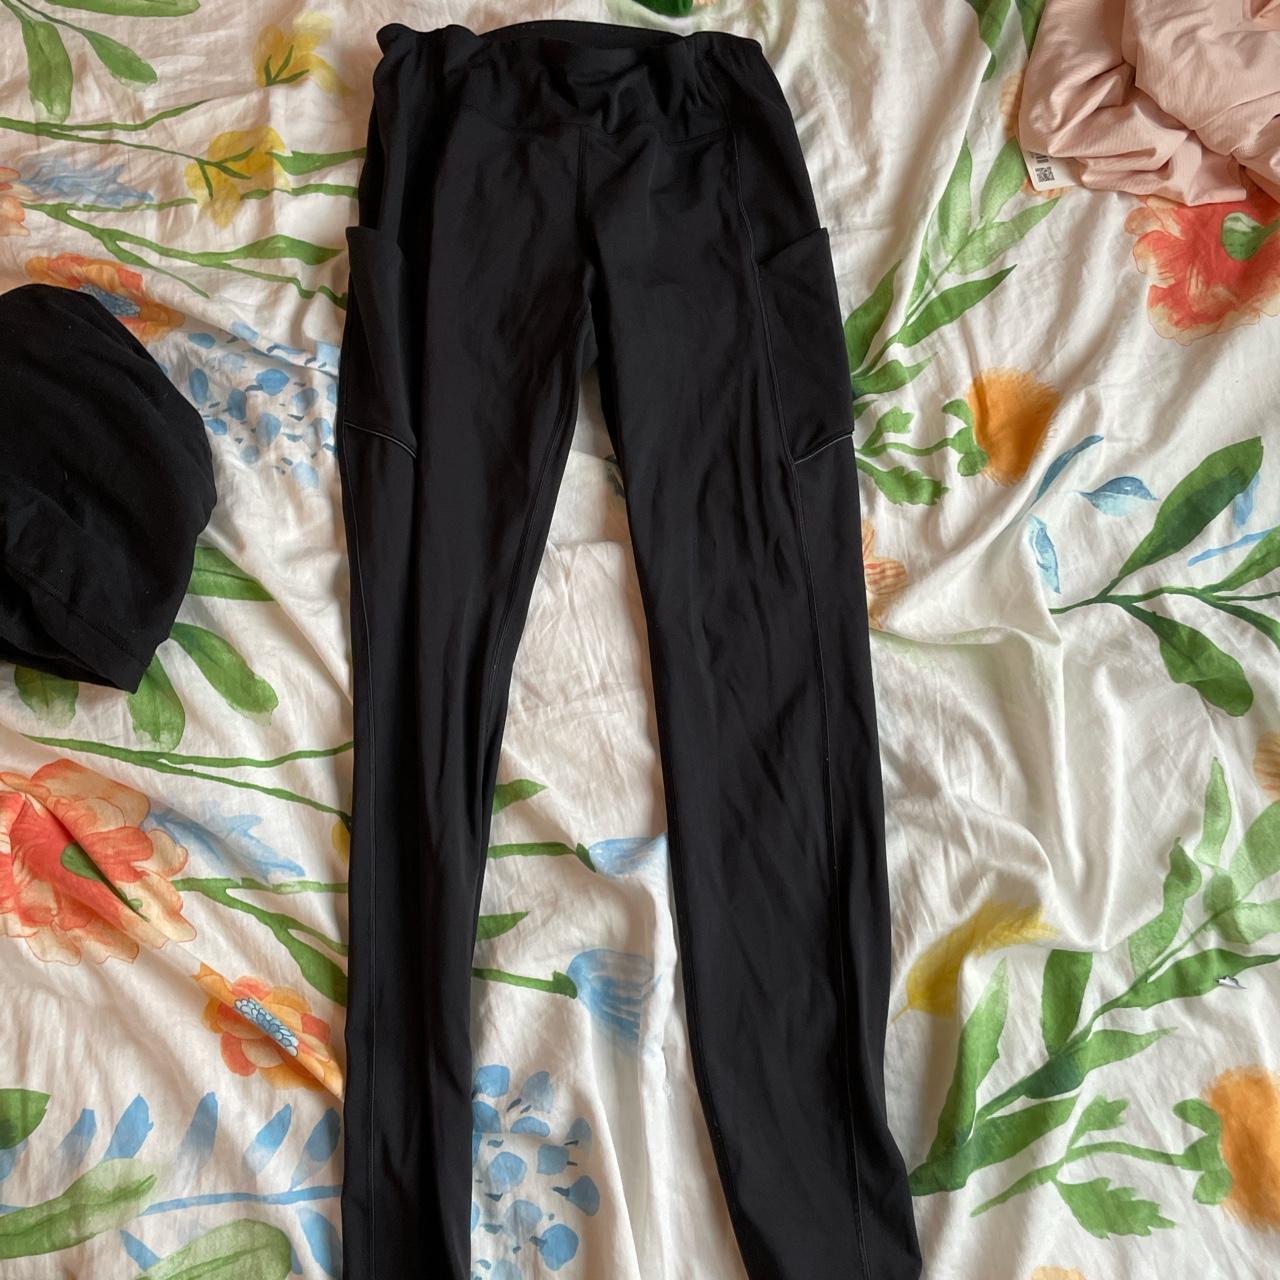 Size 8 lululemon full length black leggings with